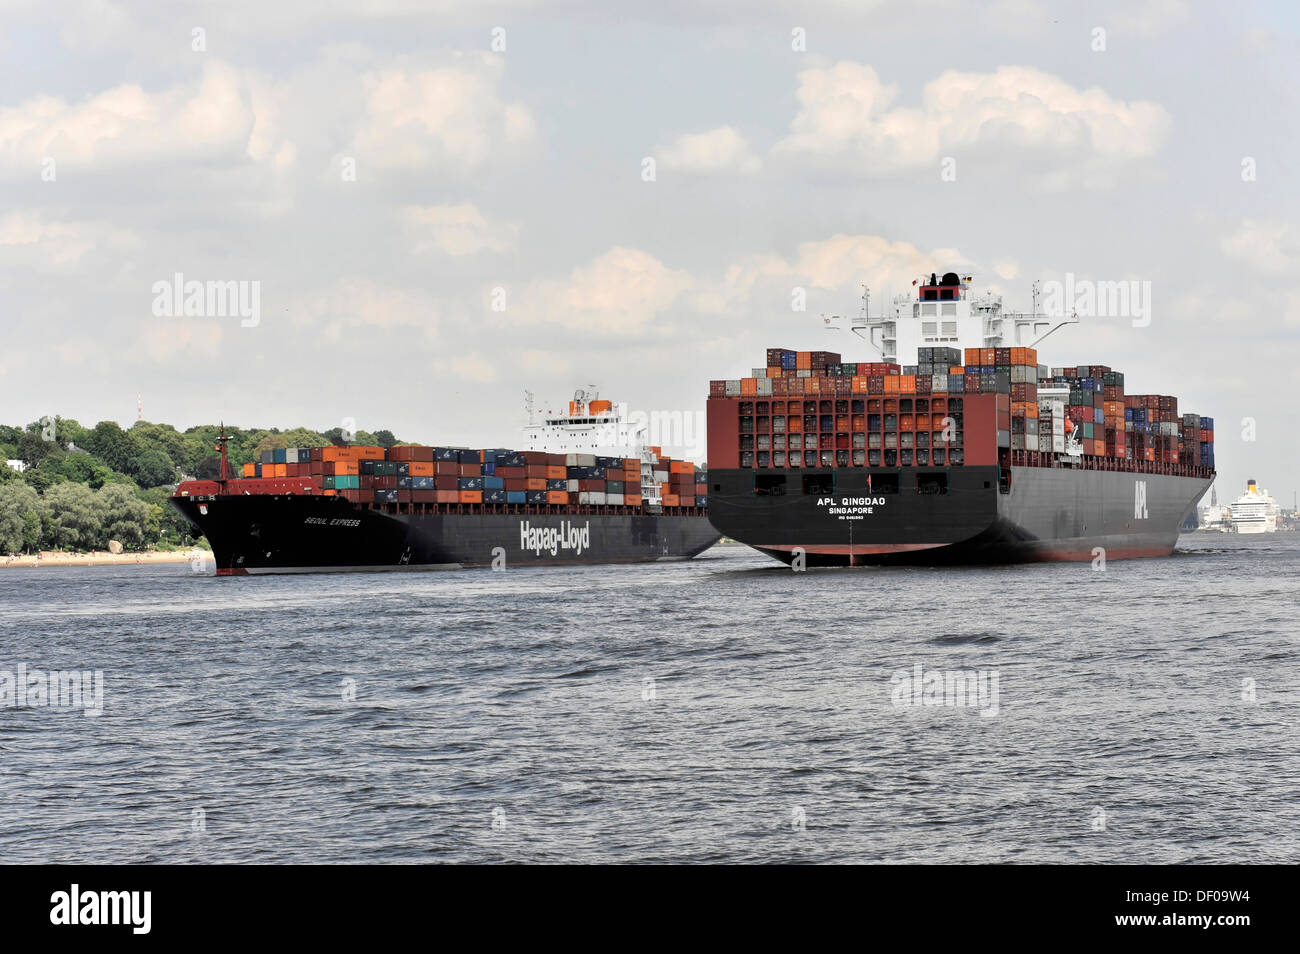 Incontro, a destra la APL QINGDAO nave portacontainer, 349 m lungo, costruito nel 2012, a sinistra la Seoul Express, 294 m di lunghezza, costruito nel 2000 Foto Stock